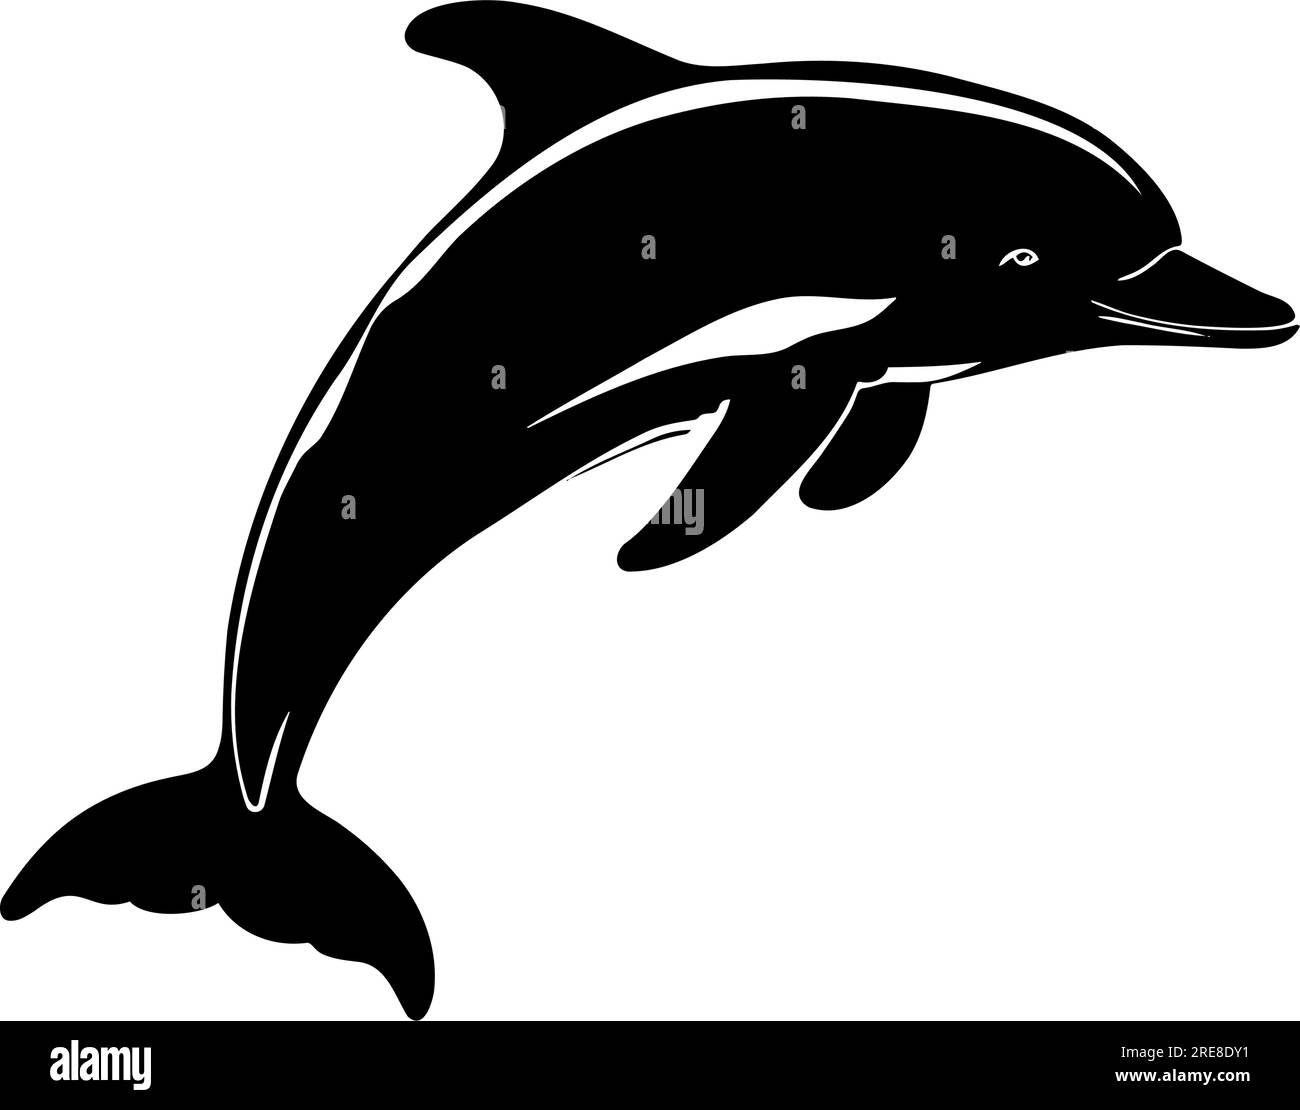 Dolphin Silhouette Изображения: просматривайте стоковые фотографии,  векторные изображения и видео в количестве 